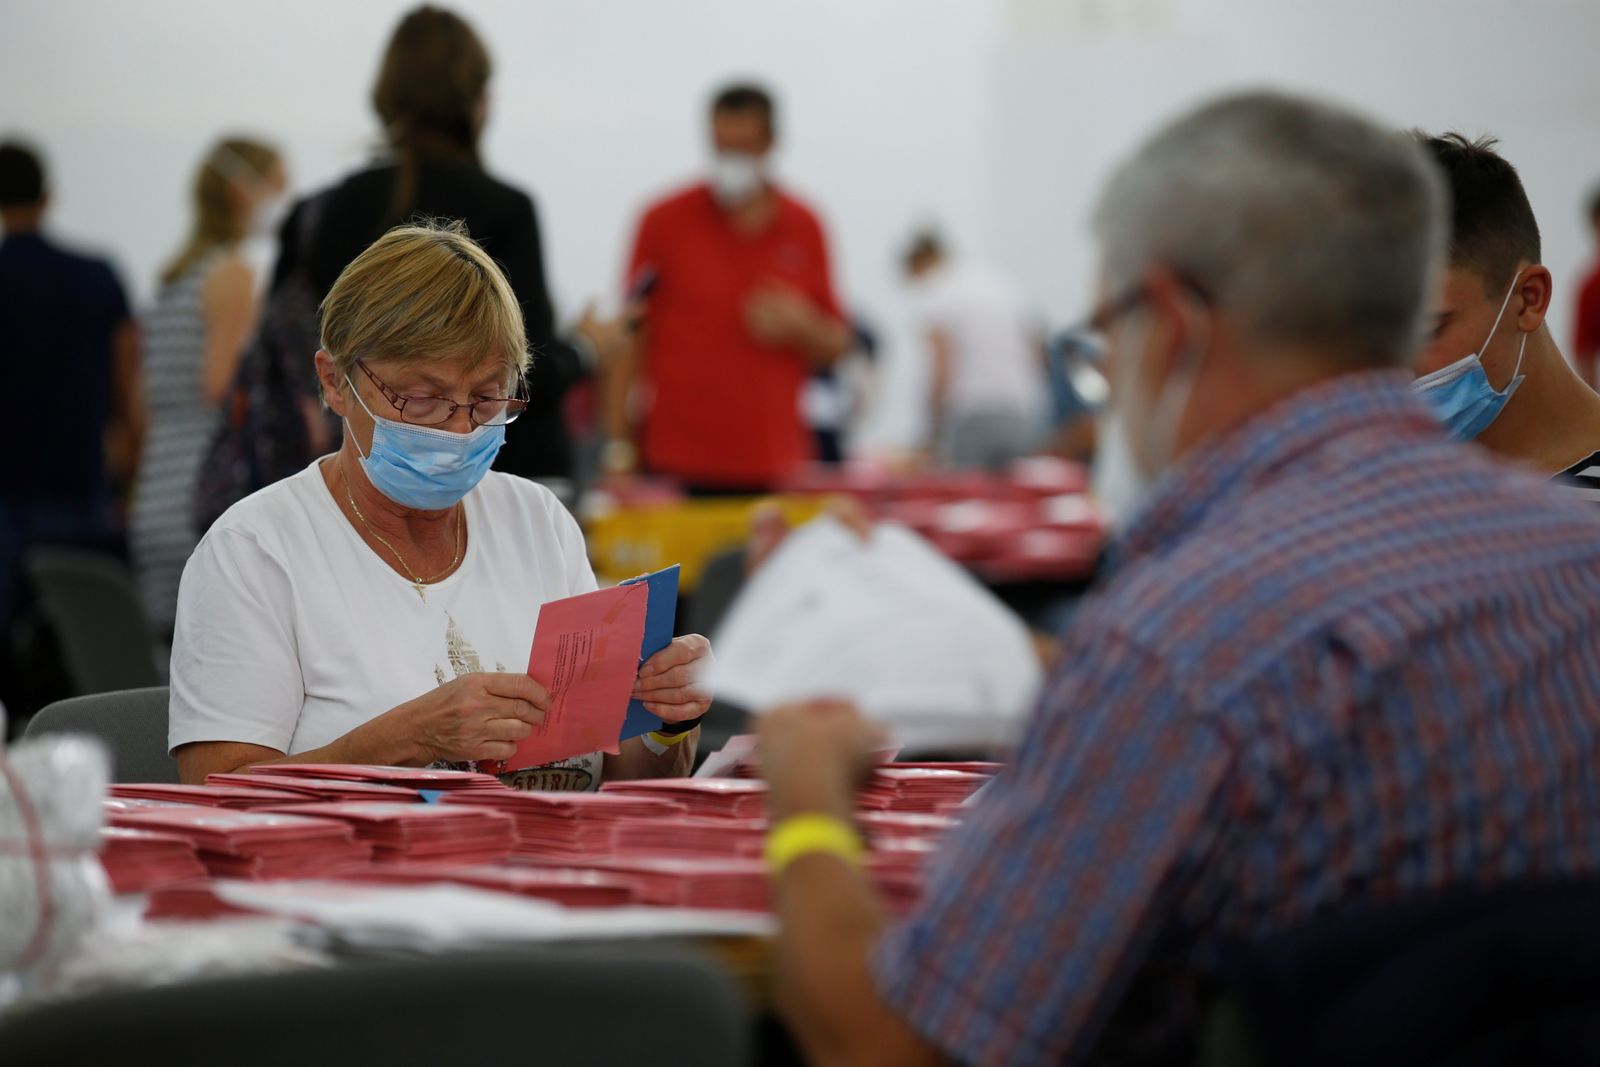 عمال يفتحون بطاقات الاقتراع المرسلة بالبريد خلال الانتخابات العامة الألمانية في ميونيخ- 26 سبتمبر 2021 - REUTERS